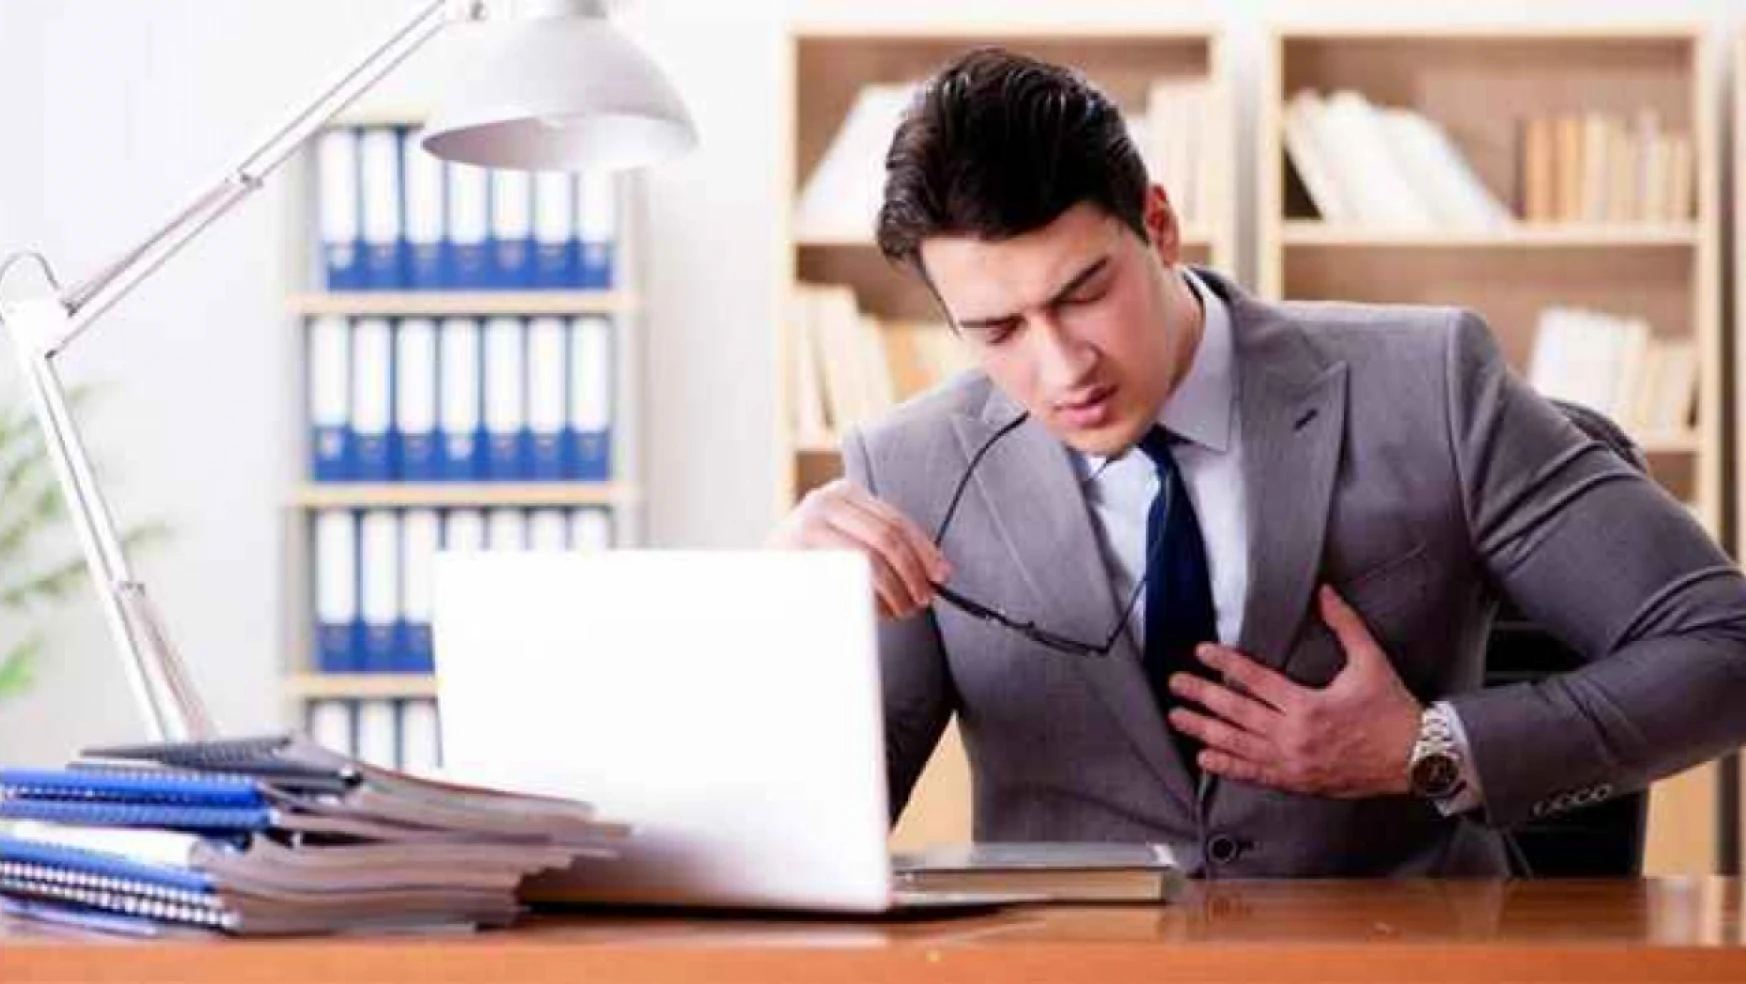 İş yerinde kalp krizi geçirilmesi iş kazası sayılır mı? Yargıtay konuya nasıl bakıyor?